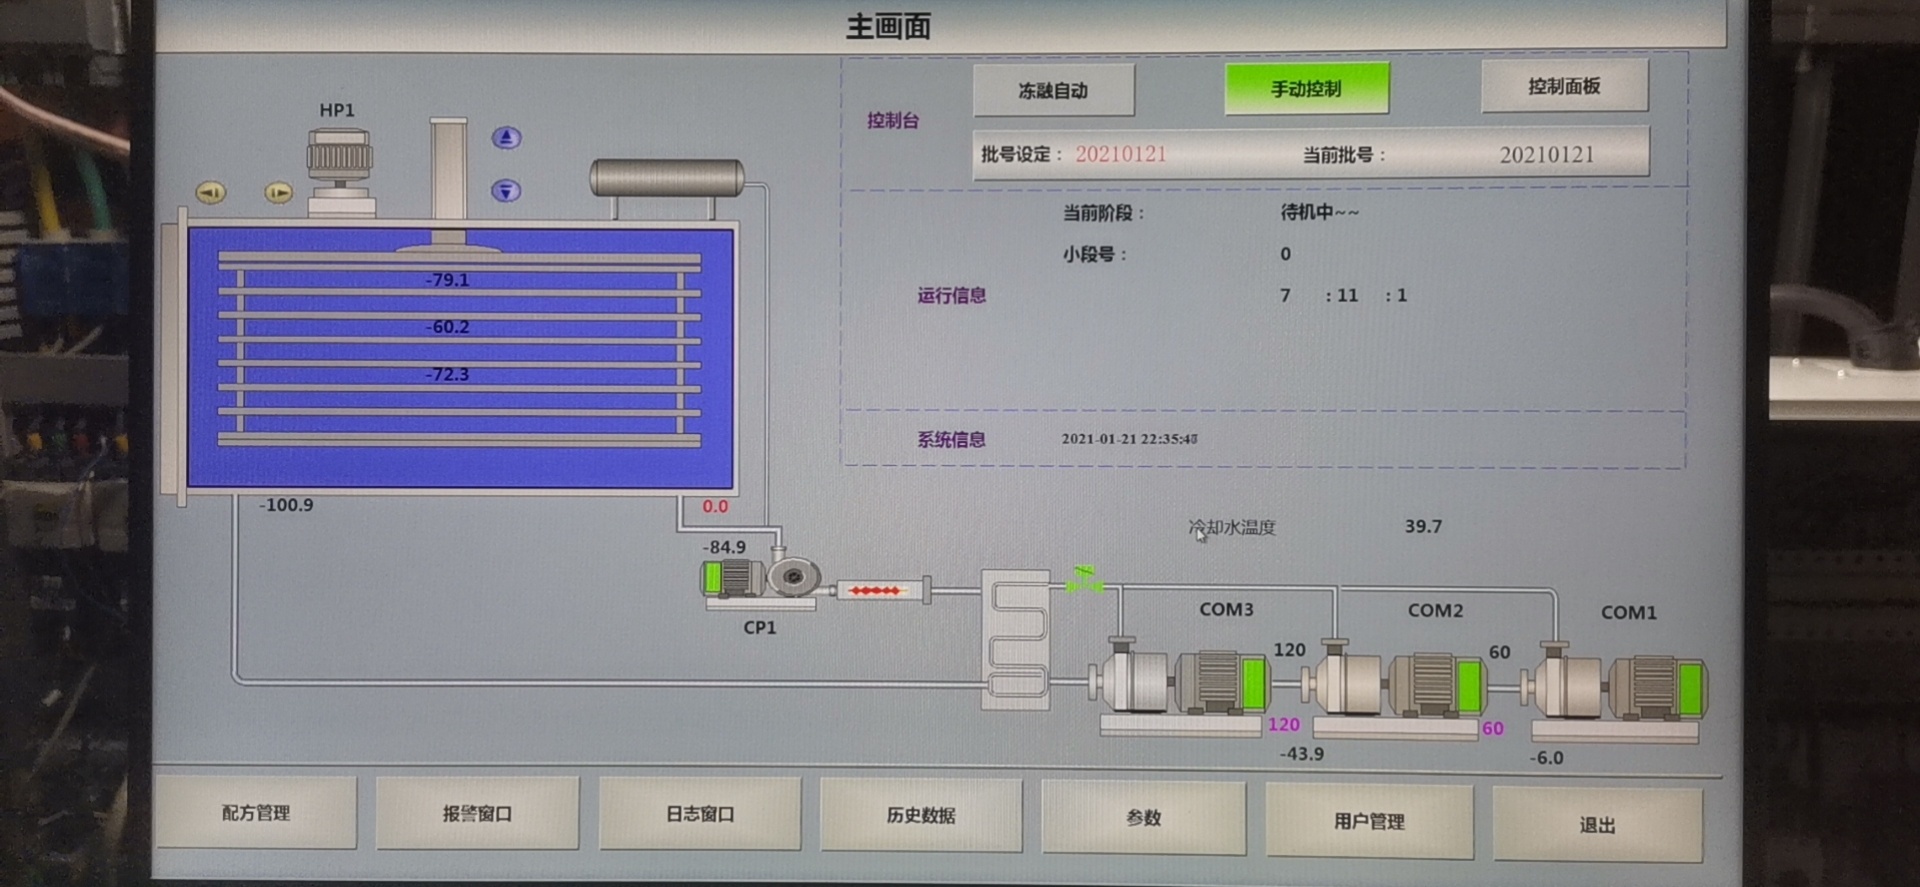 上海田枫冻融机设备上海田枫实业有限公司